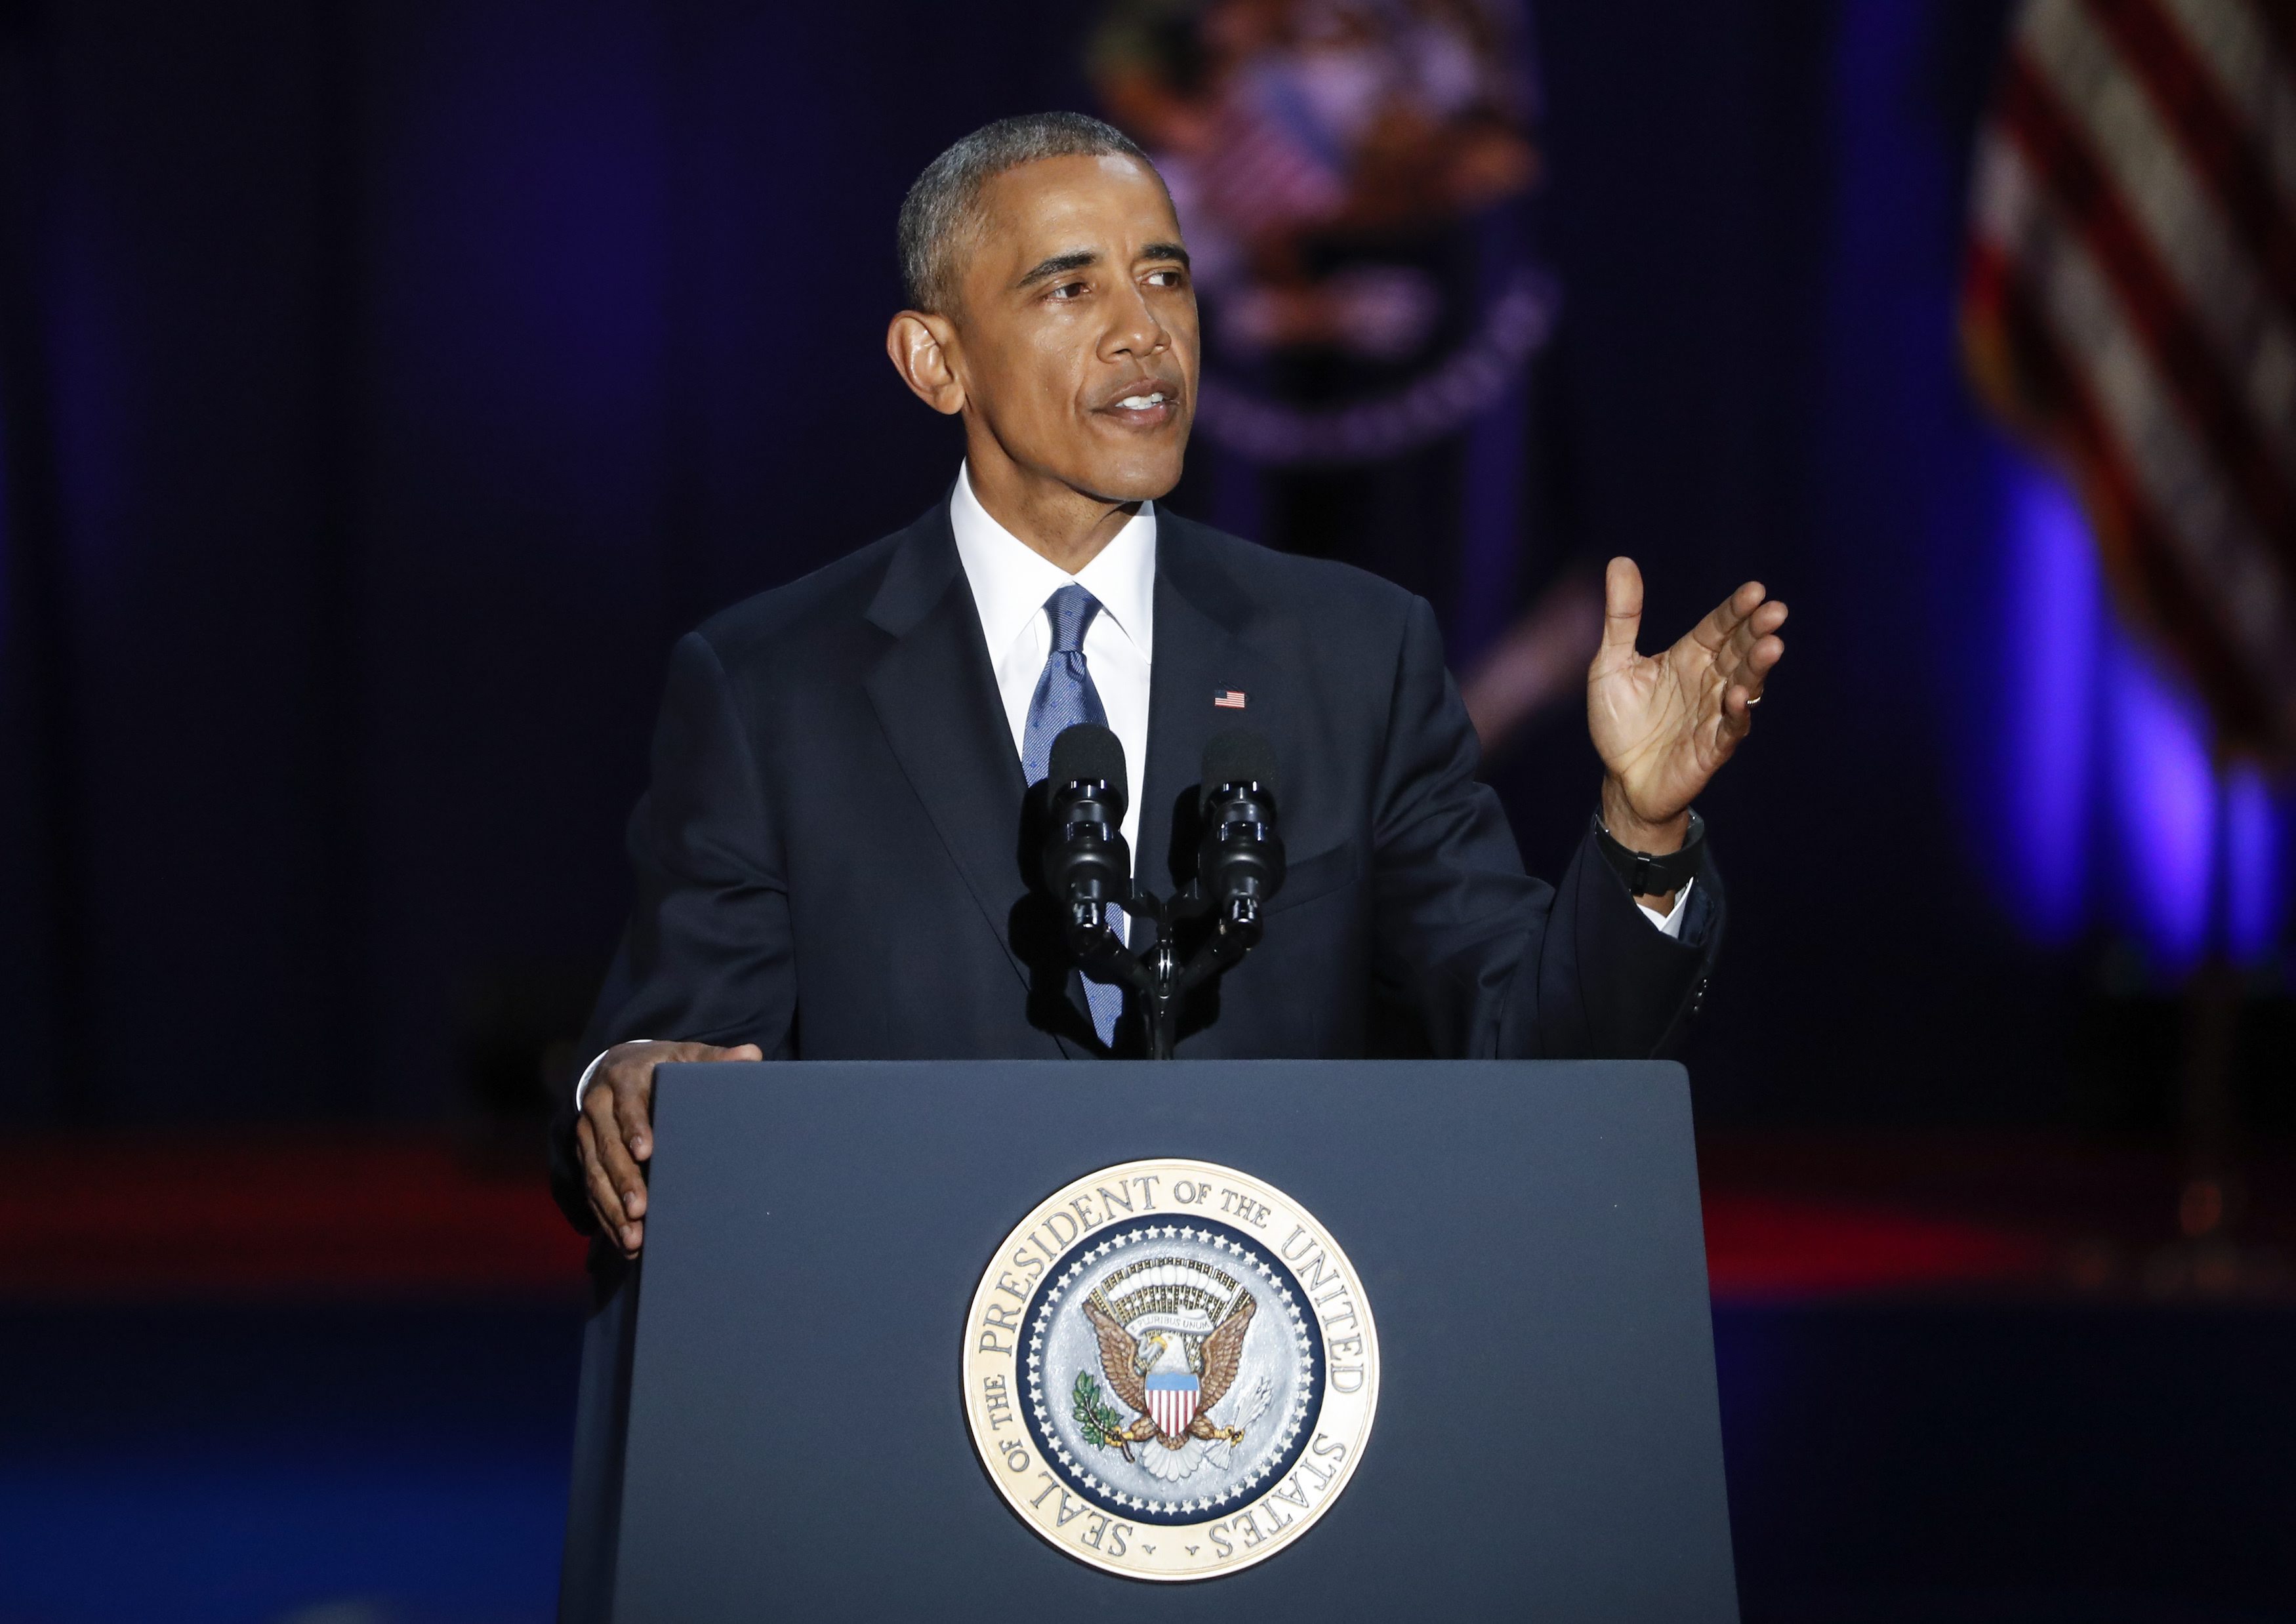 Барак Обама изнесе своята последна реч като президент на САЩ пред хиляди хора в Чикаго - градът, в който той отпразнува издигането си във властта преди осем години. На моменти гласът му отразяваше емоциите. Той си спомни както пораженията, така и победите.